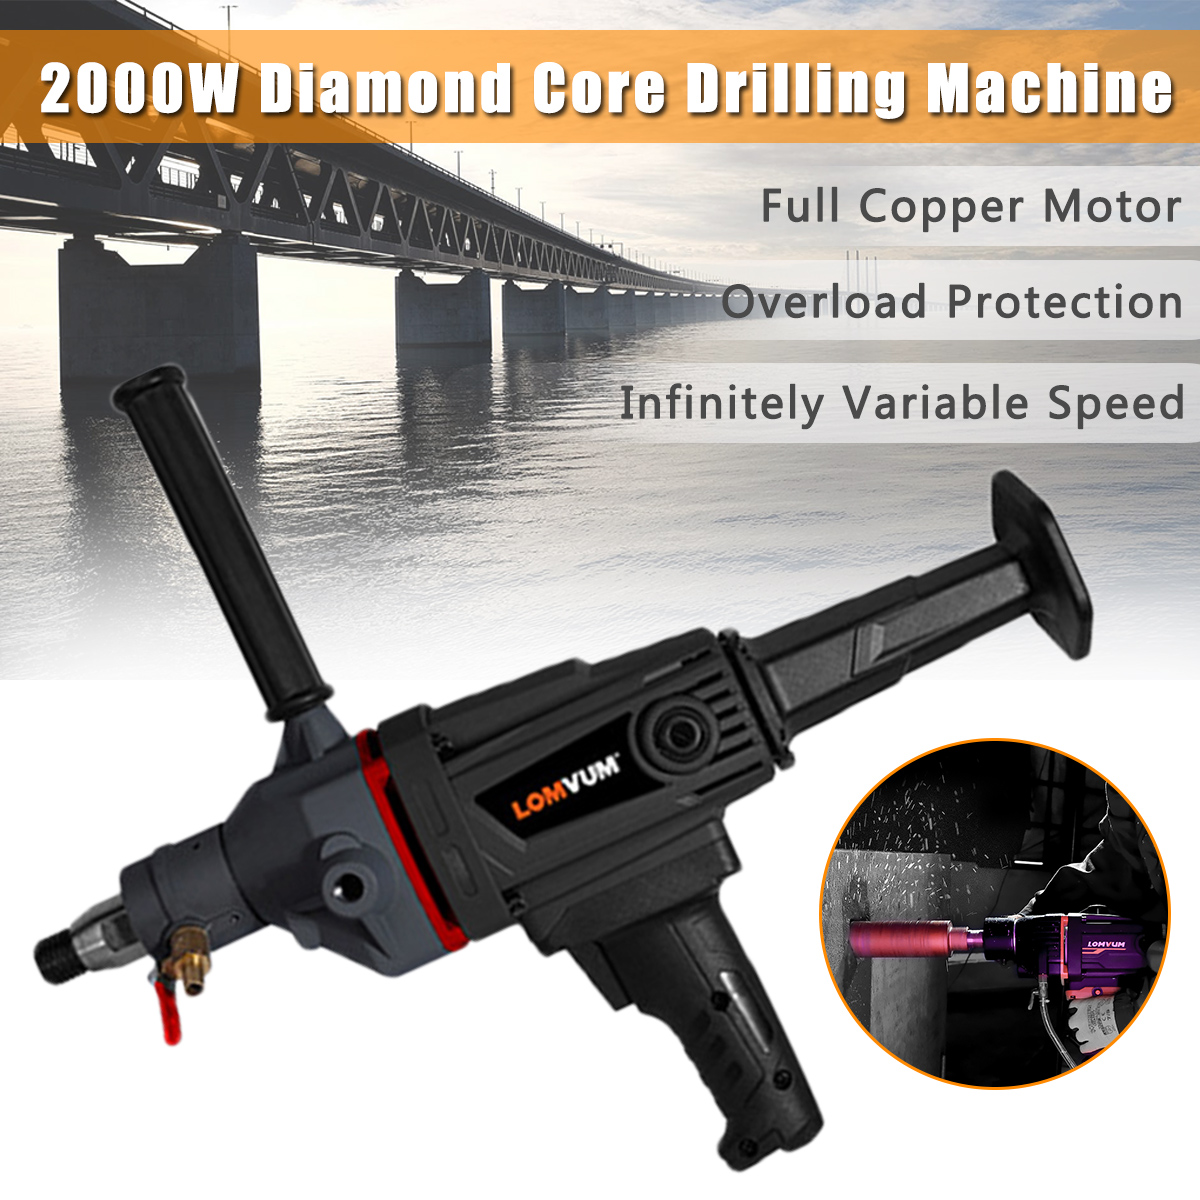 2000W-Diamond-Core-Drilling-Machine-Drill-WetDry-Concrete-Machine-Hole-Puncher-Nozzle-Bits-1611804-6